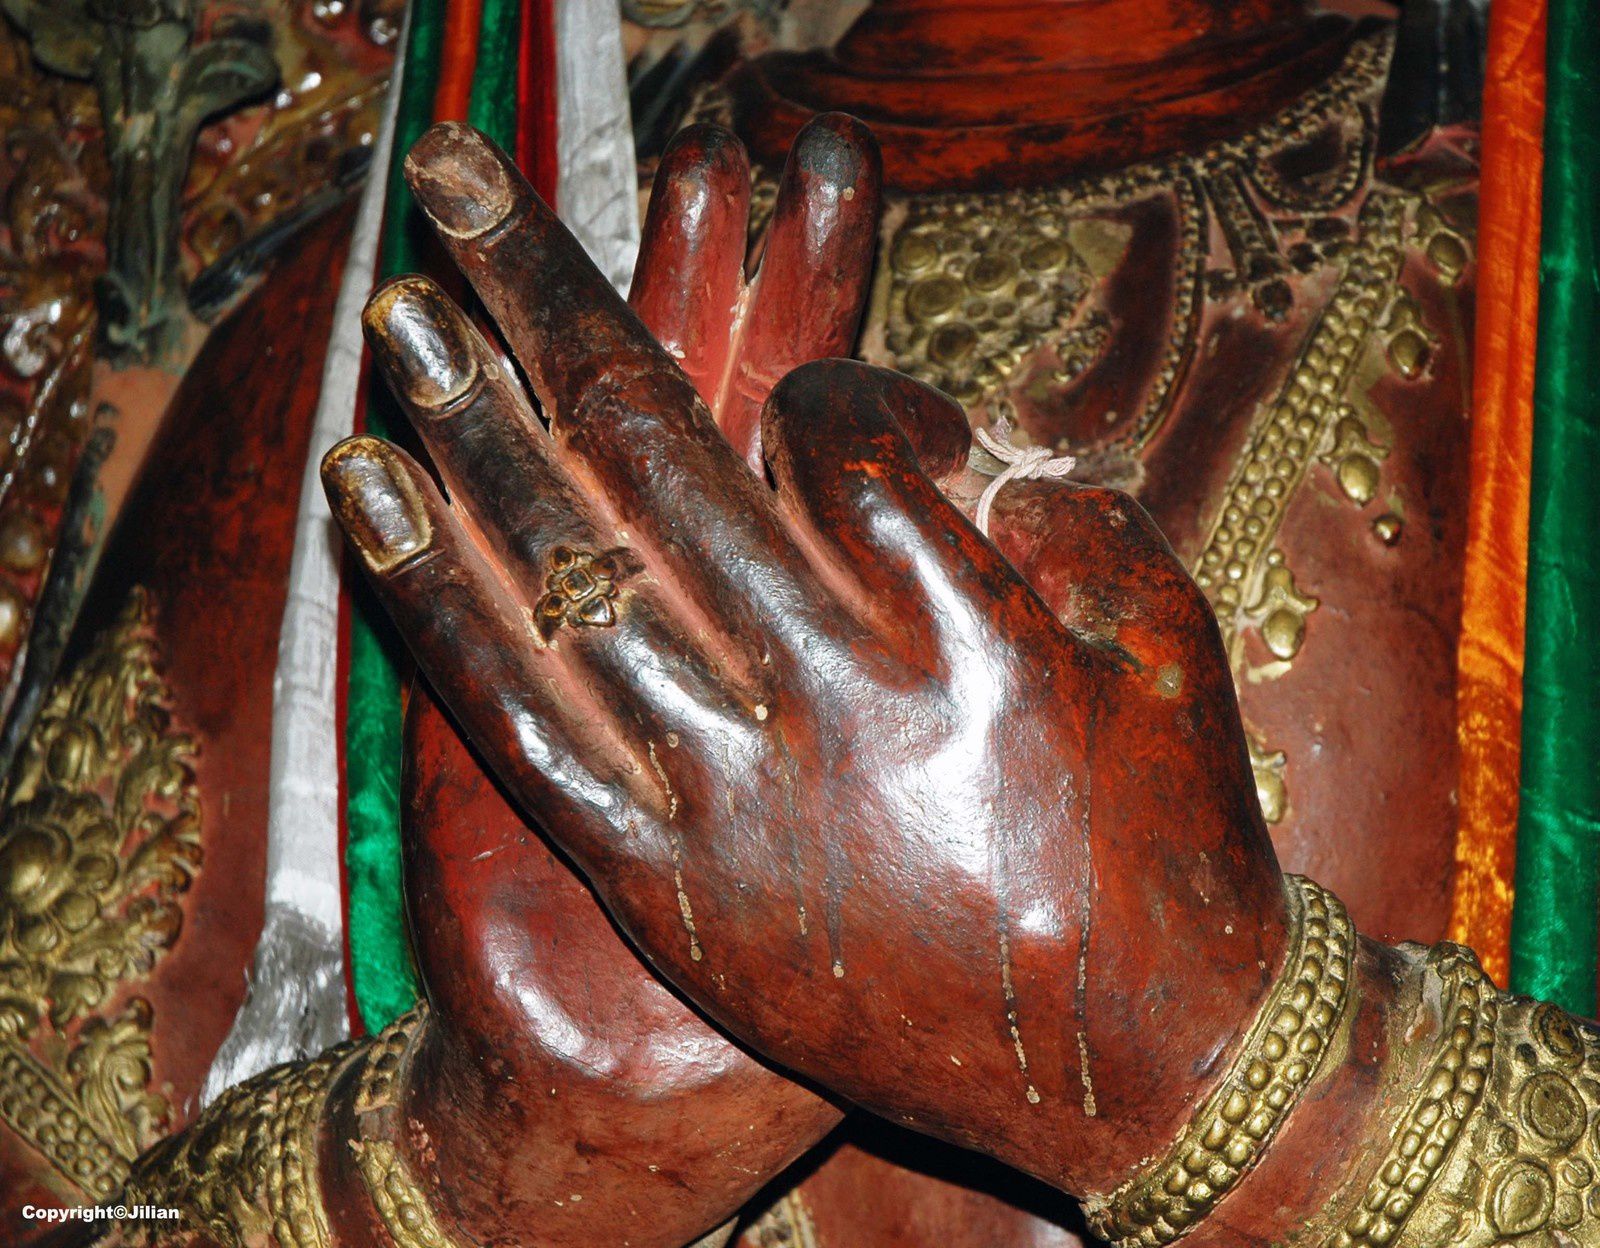 Le "mudra" (geste) de l'enseignement. Dans la terminologie bouddhiste un "mudra" est un geste de la main, empreint d'une signification symbolique, effectué par les bouddhas, les divinités ou les prêtres